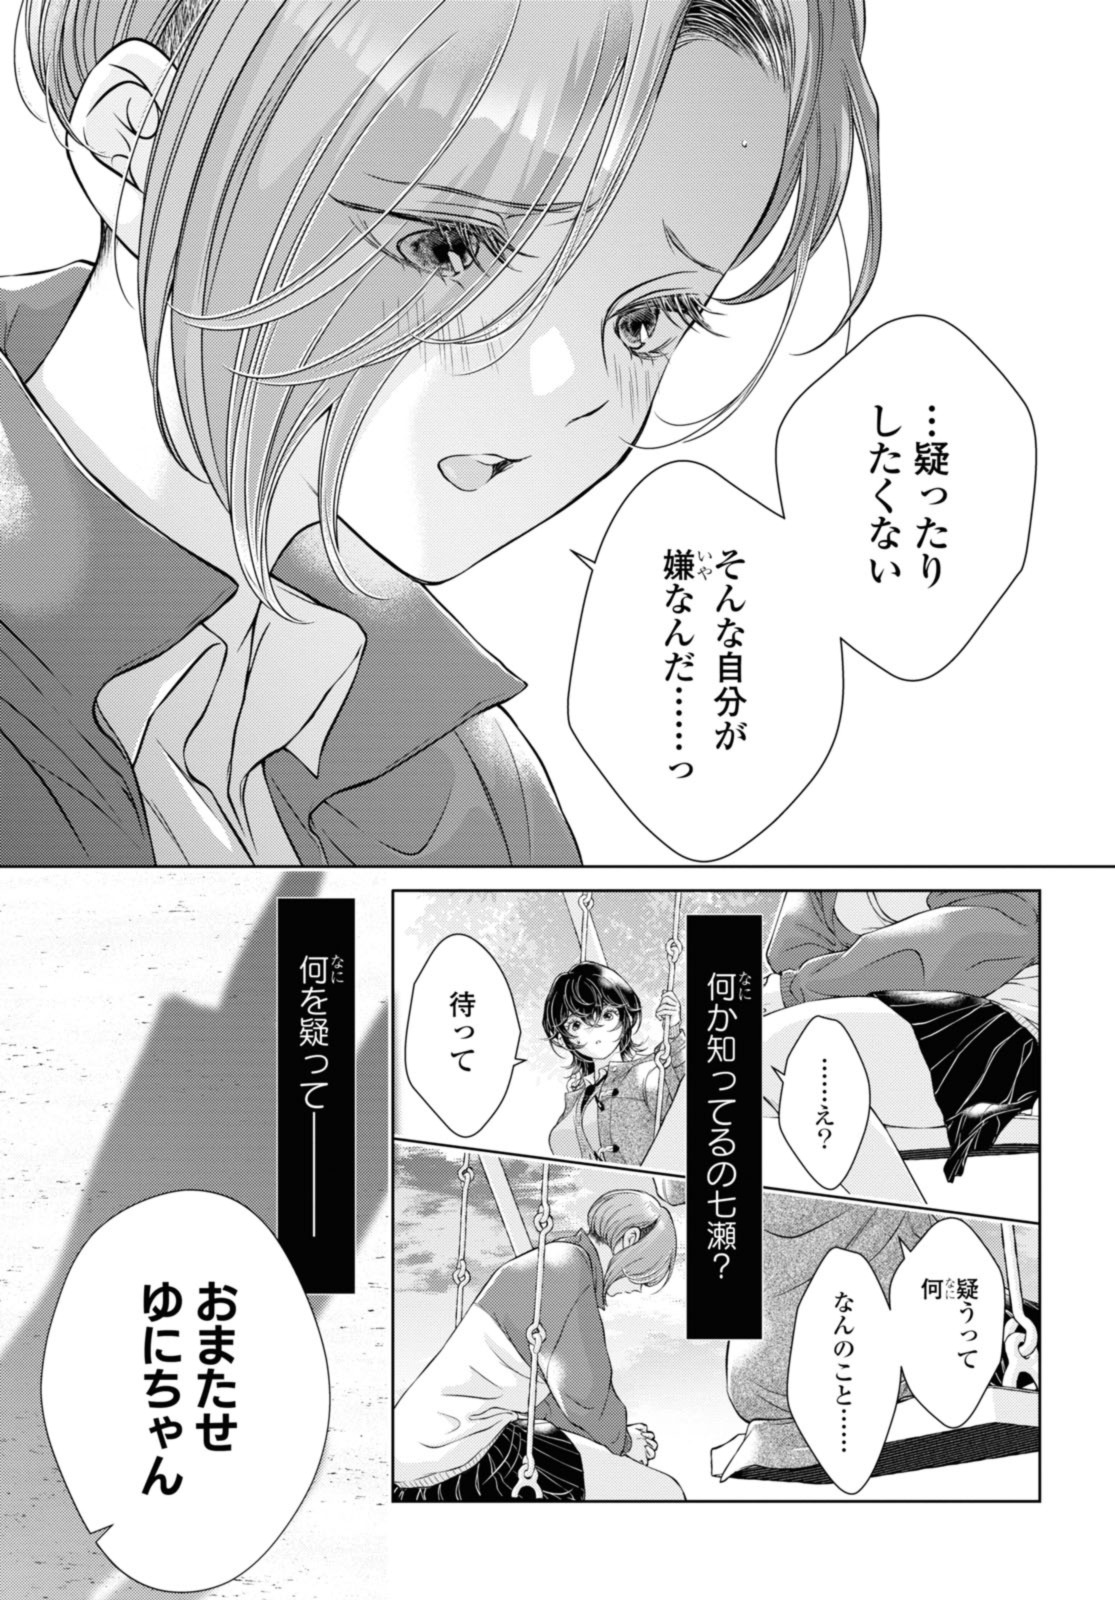 Kyou wa Kanojo ga Inai Kara - Chapter 16.3 - Page 1